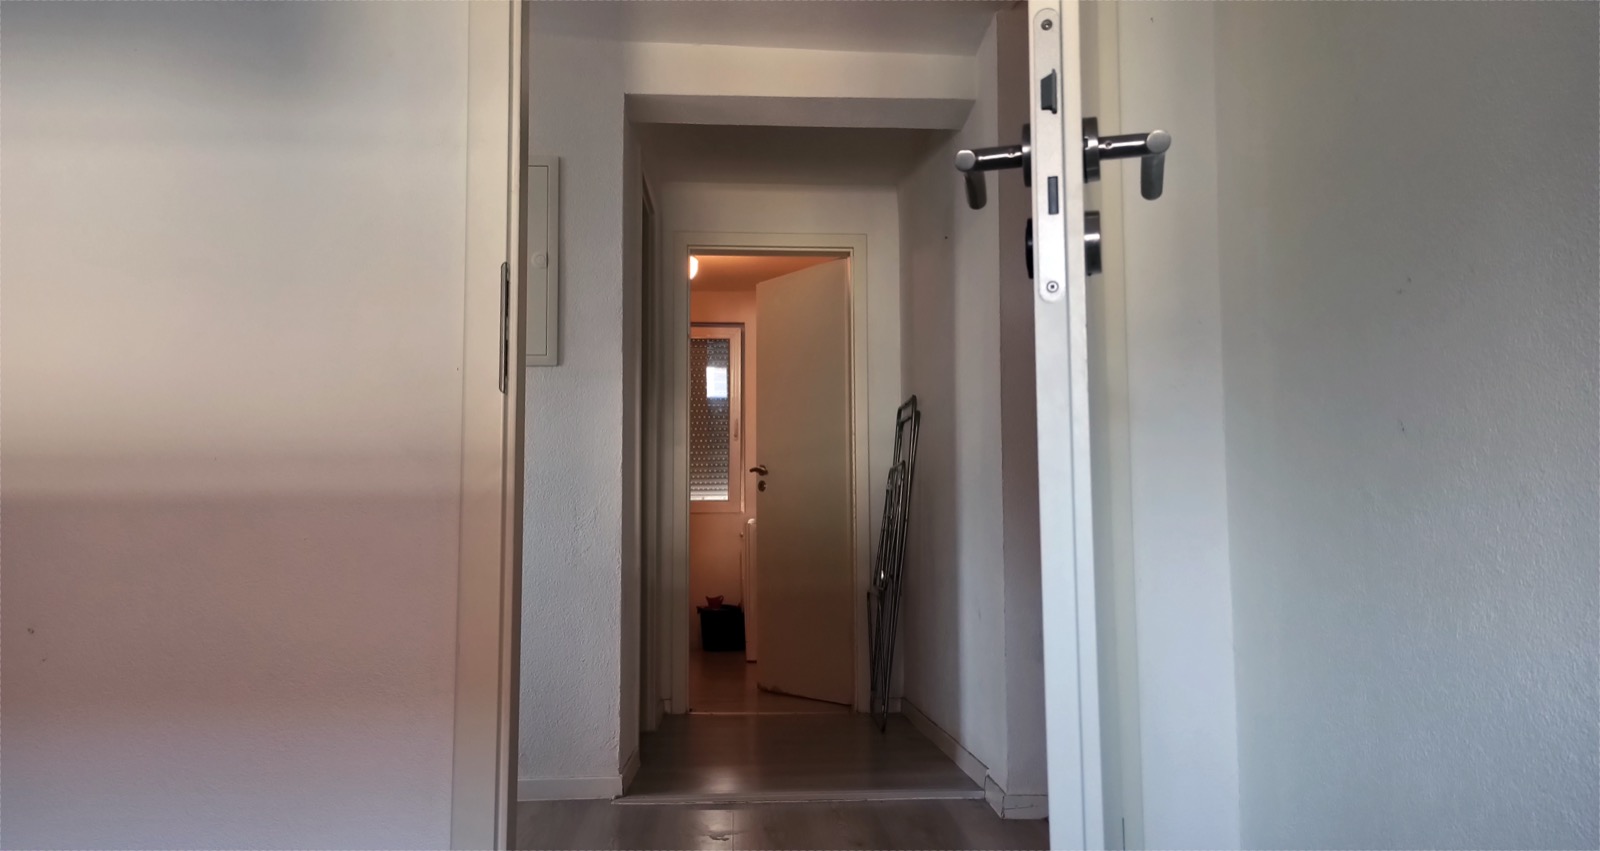 Open door to small room